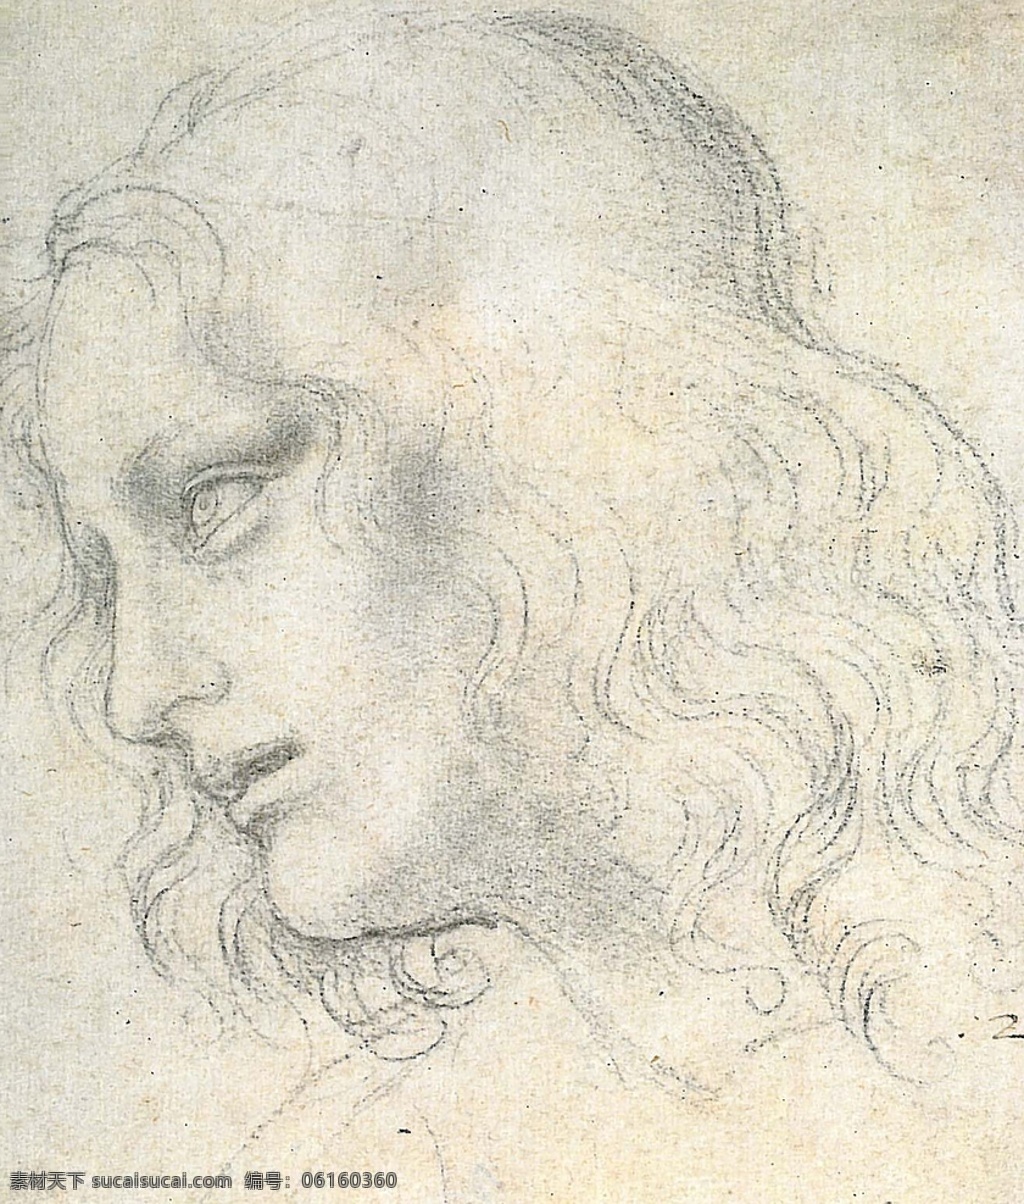 达芬奇手稿 达芬奇 手稿 草稿 素描 高清 文化艺术 绘画书法